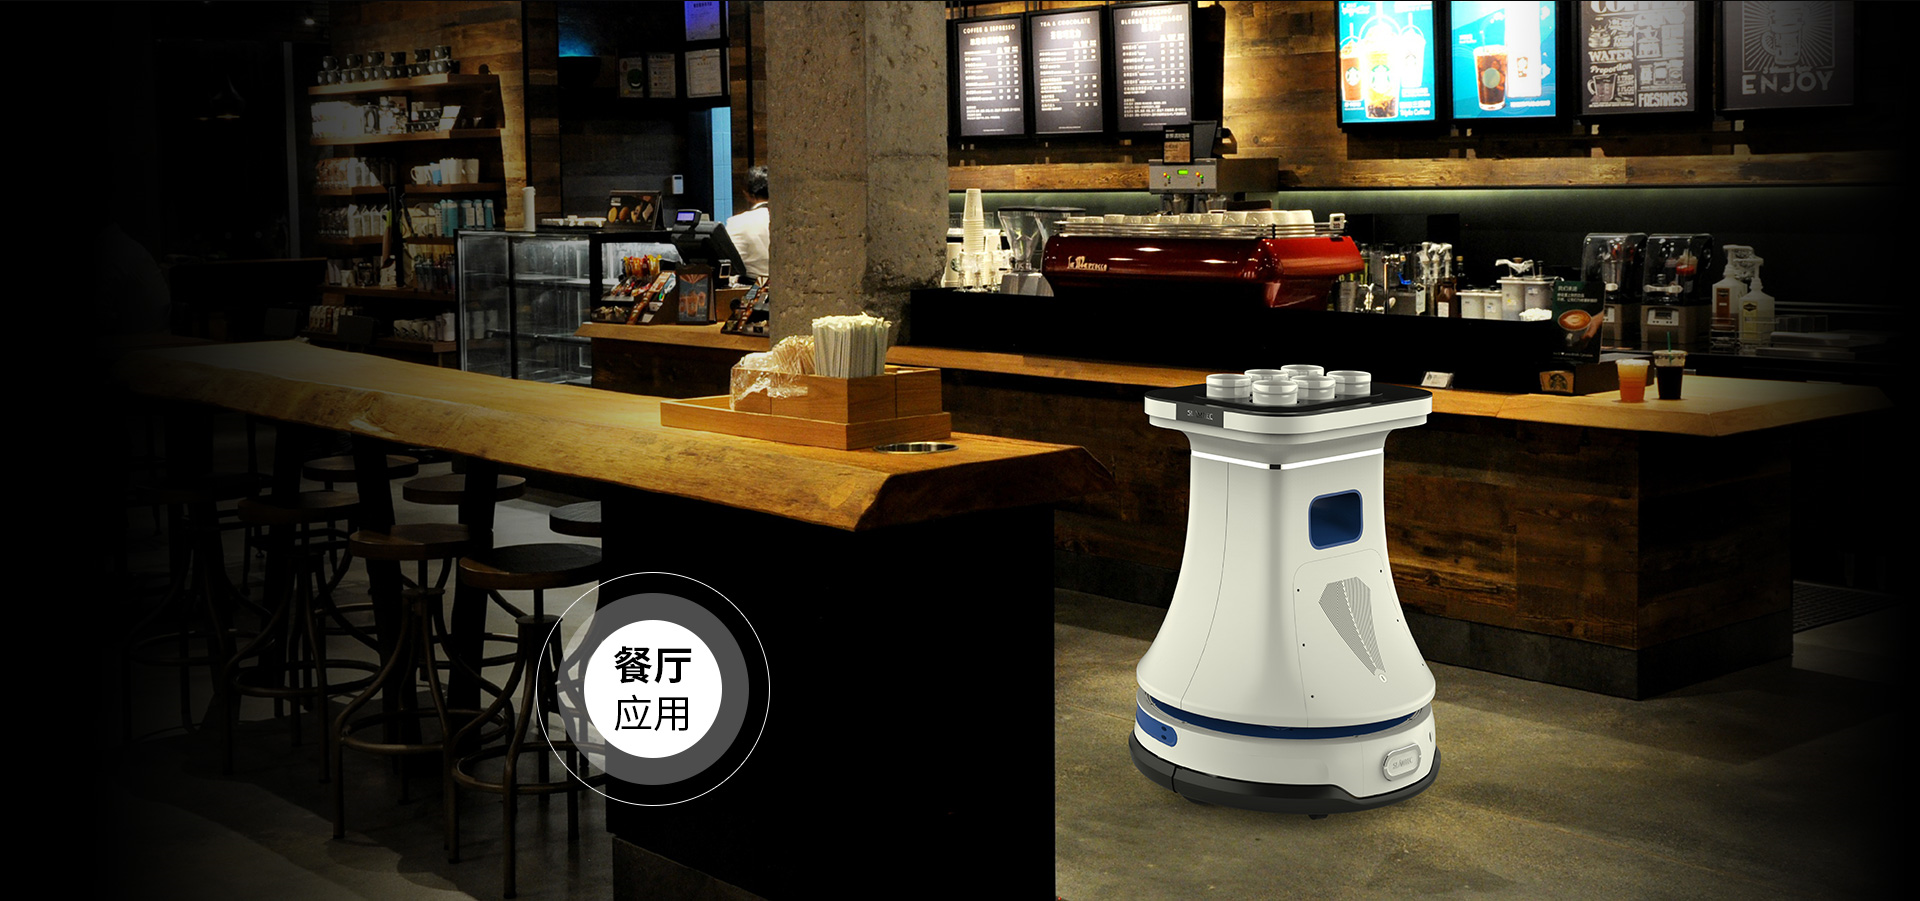 思岚科技ZEUS服务机器人底盘可应用于餐厅